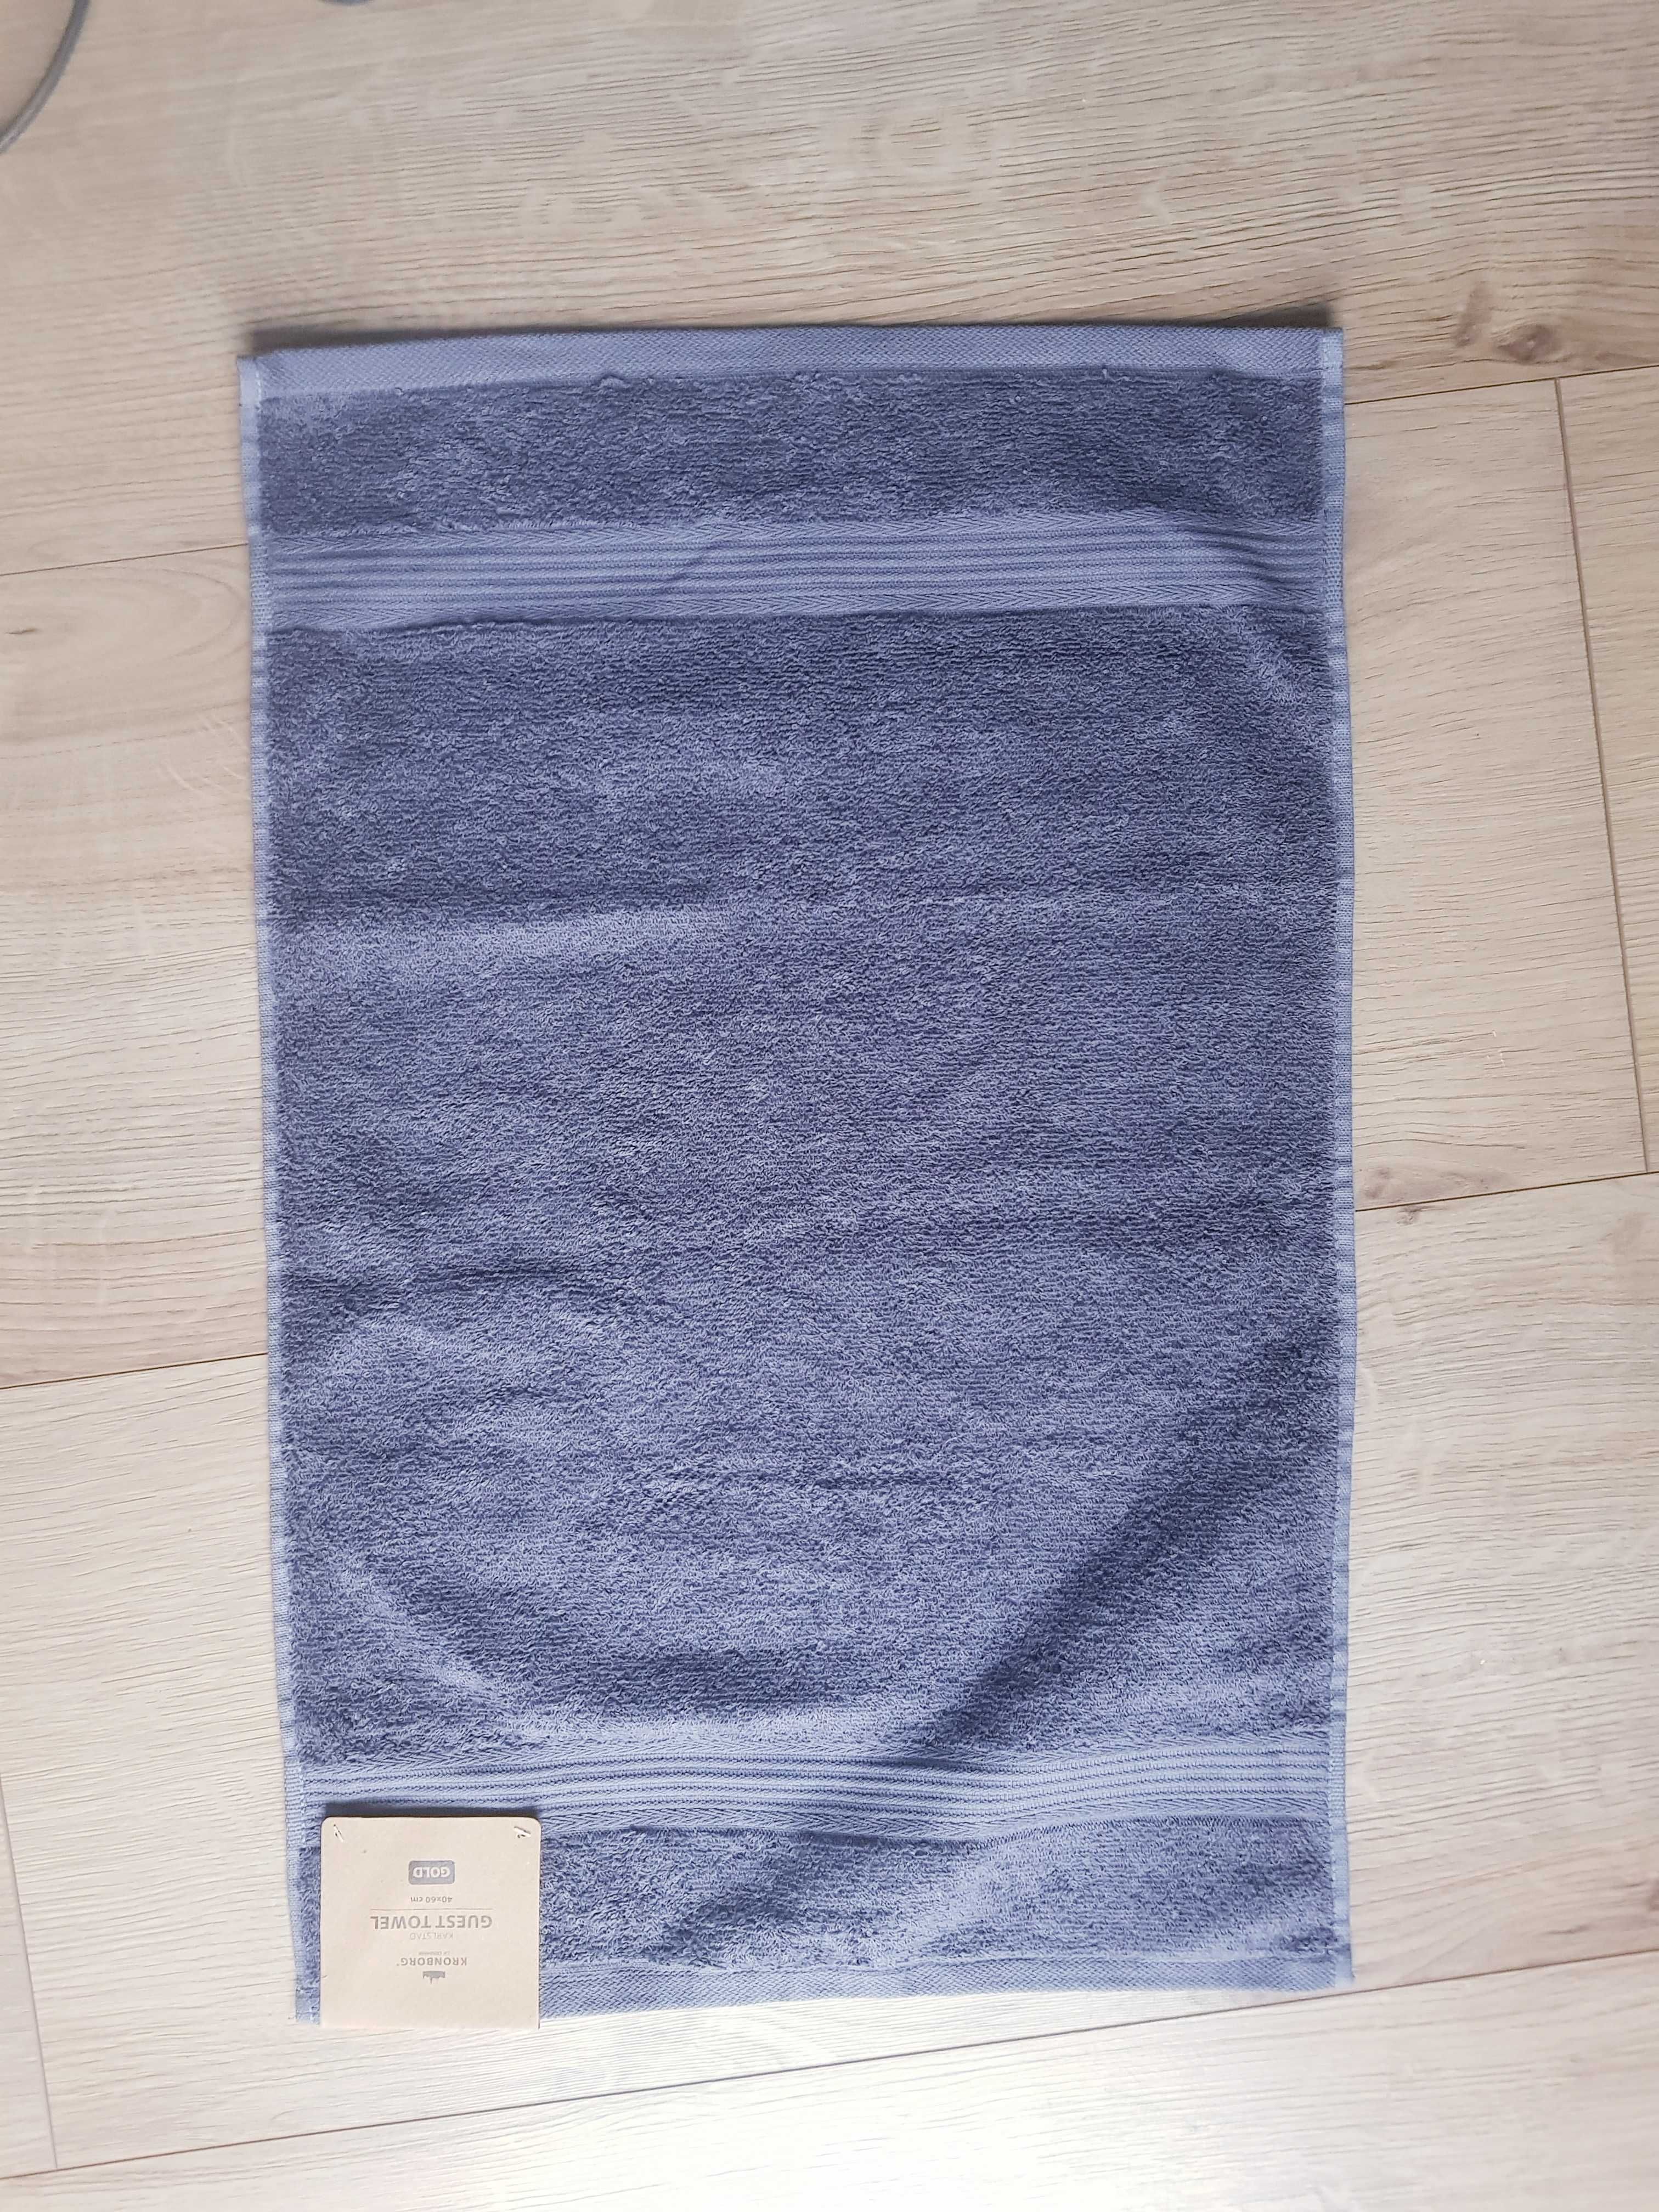 Nowy ręcznik marki Kronborg szary